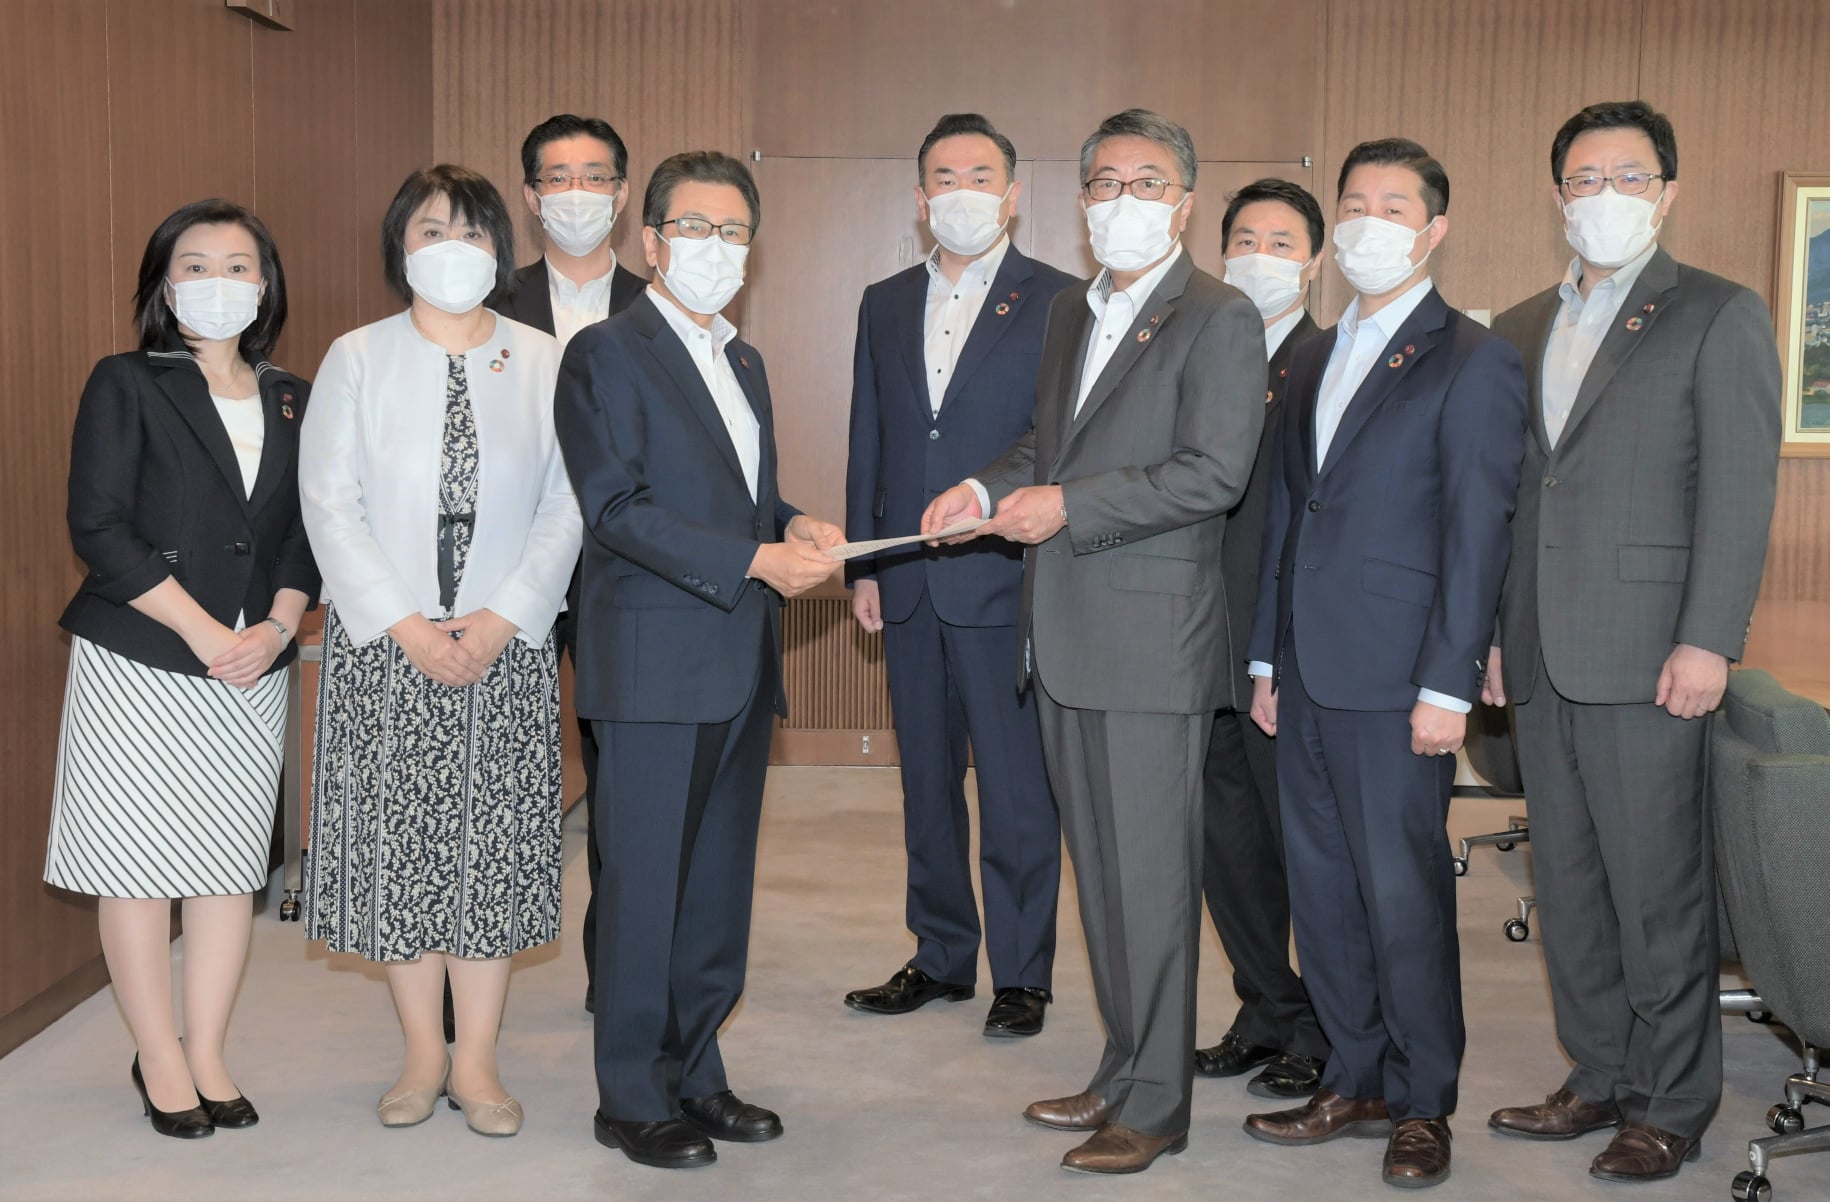 札幌市議会公明党議員会として８回目となる緊急要望を秋元市長に提出しました